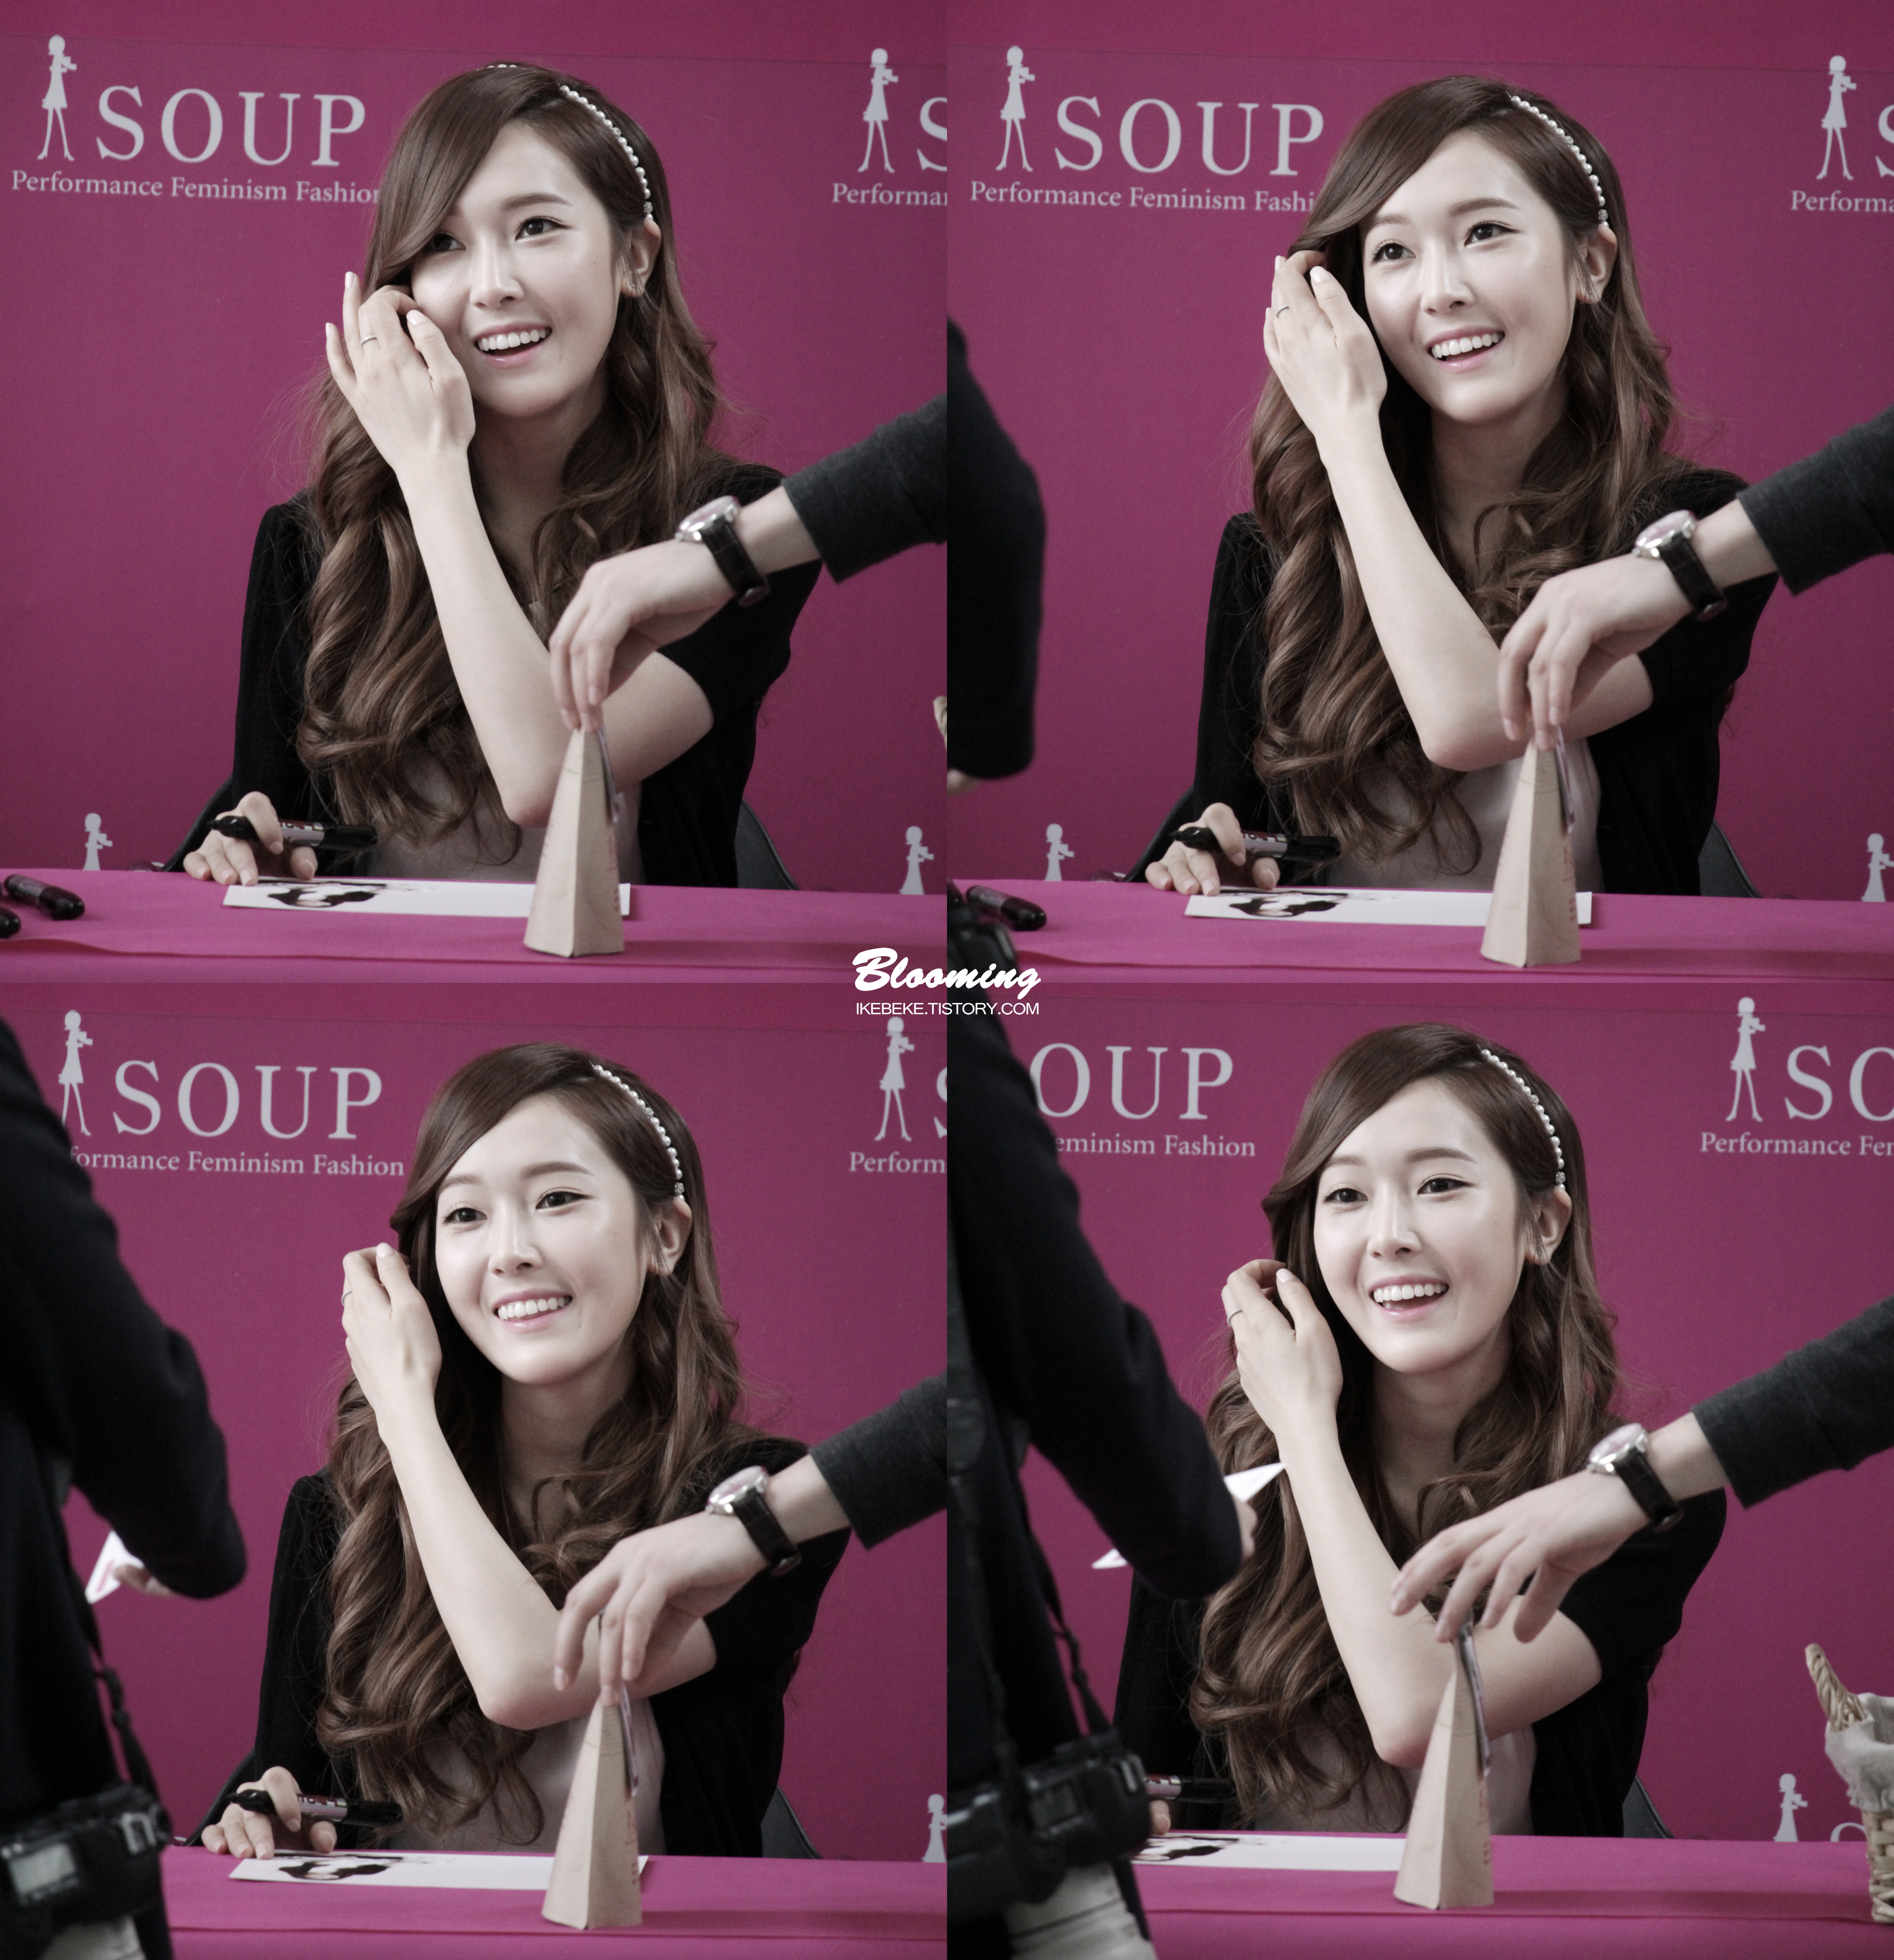 [PIC][04-04-2014]Jessica tham dự buổi fansign cho thương hiệu "SOUP" vào trưa nay 23344941533F8A2E033FE1